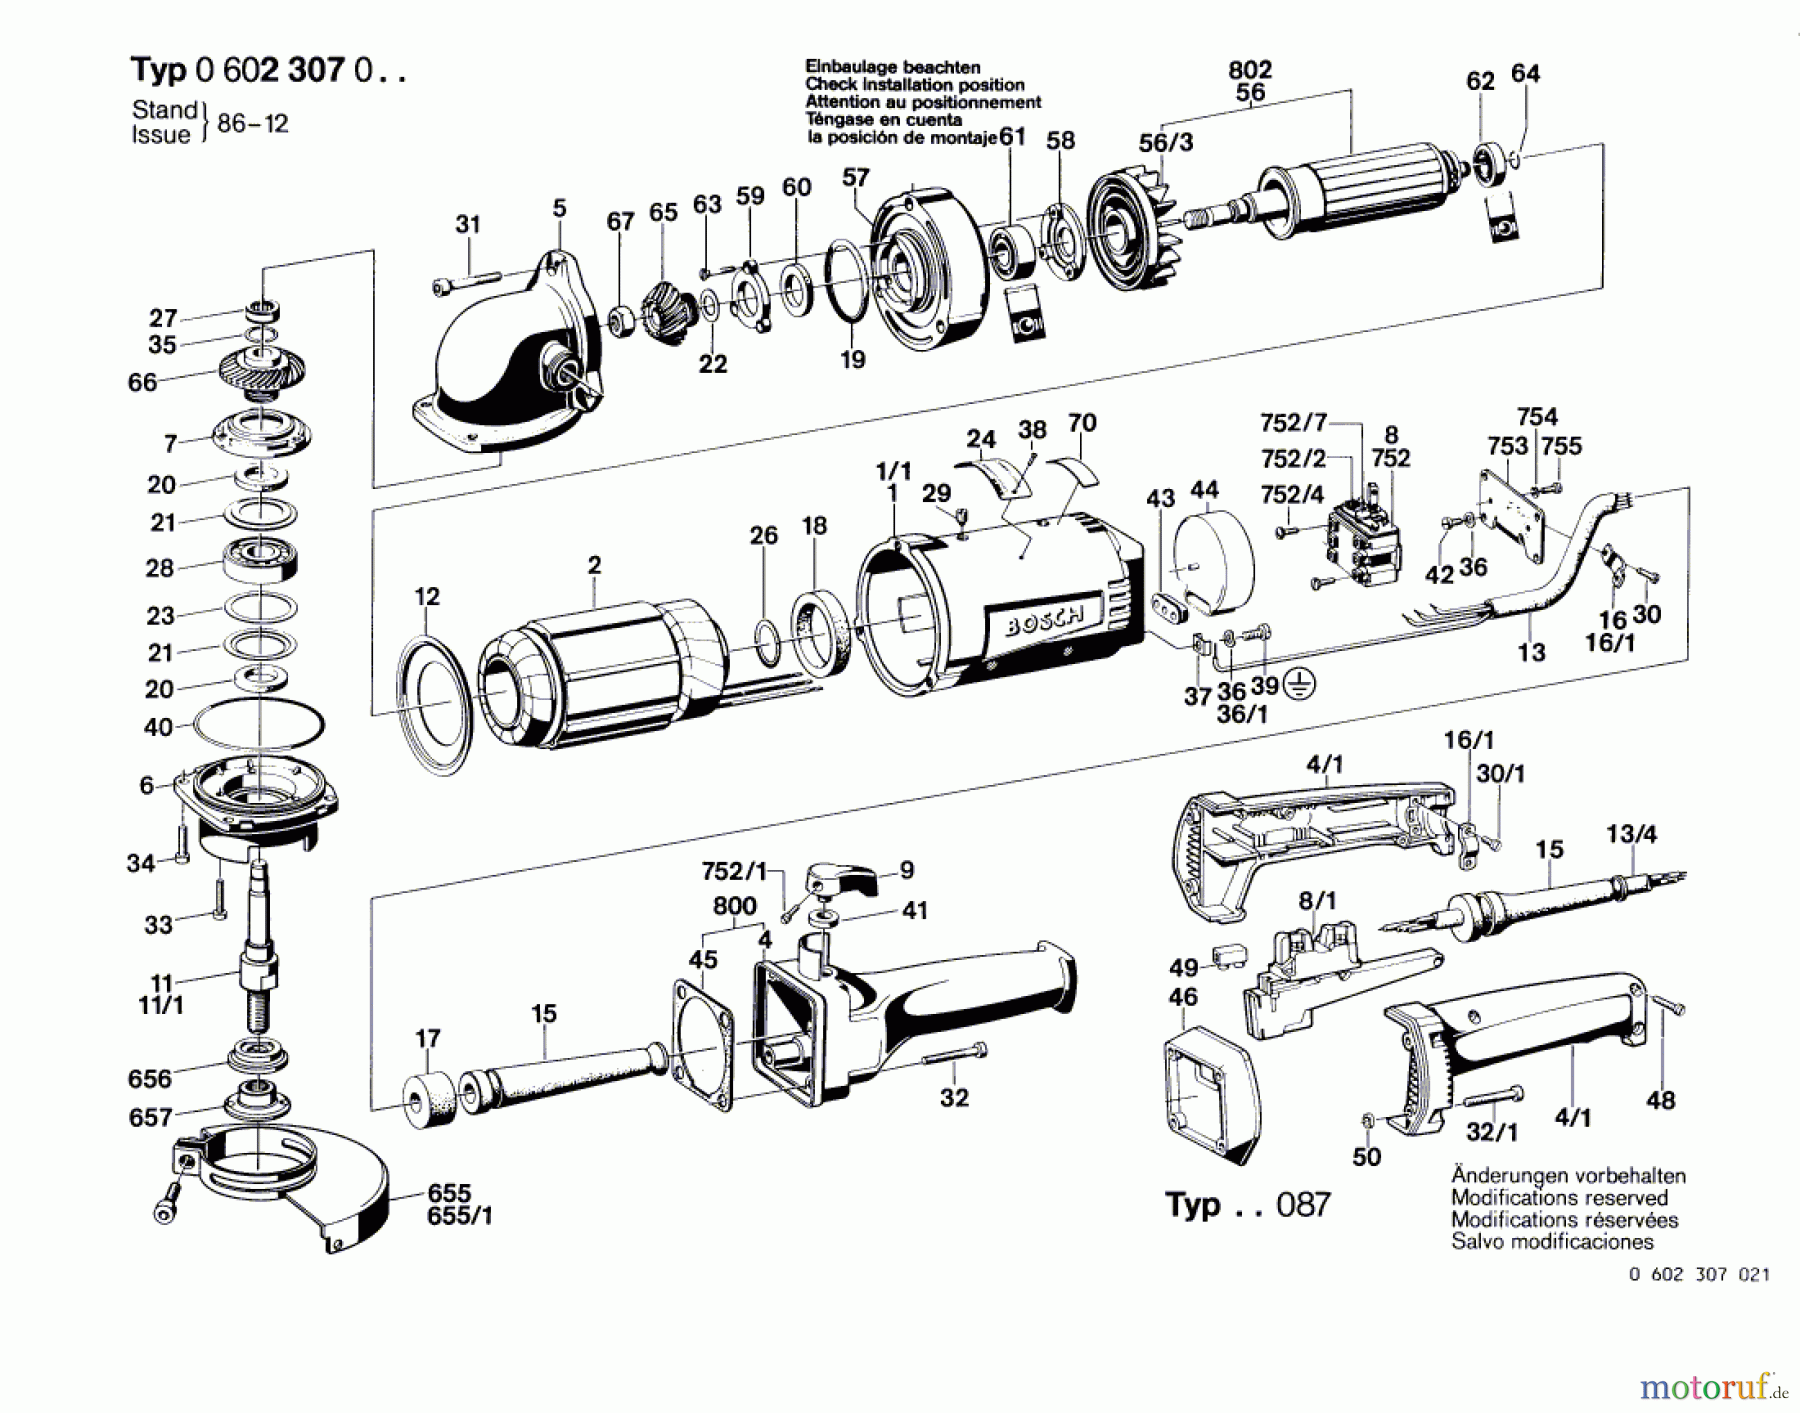  Bosch Werkzeug Winkelschleifer ---- Seite 1